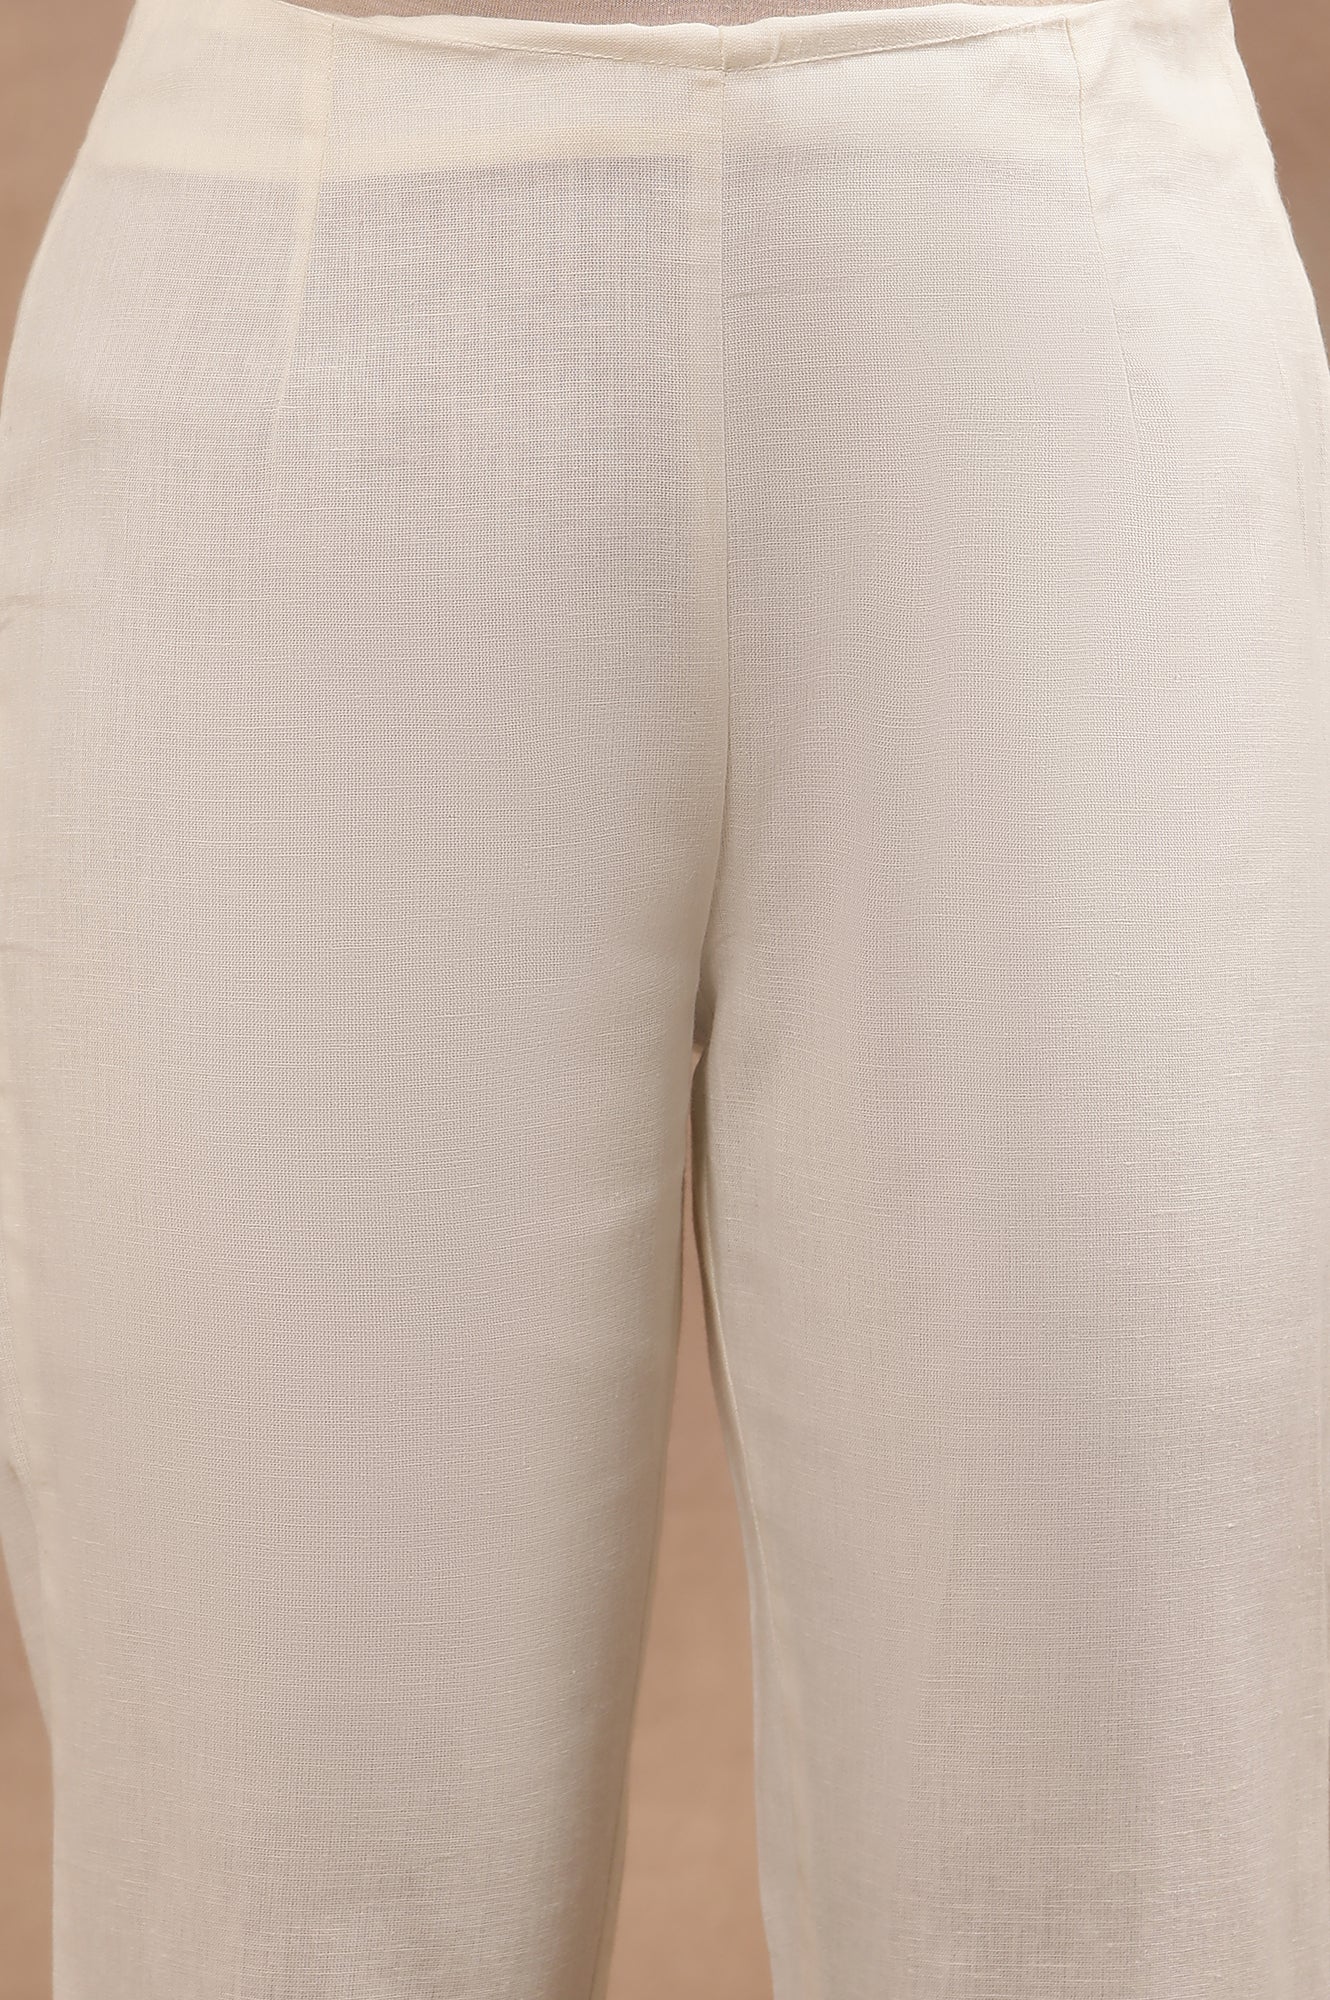 Grey Printed Mandarin Collar Kurta And Pants Set